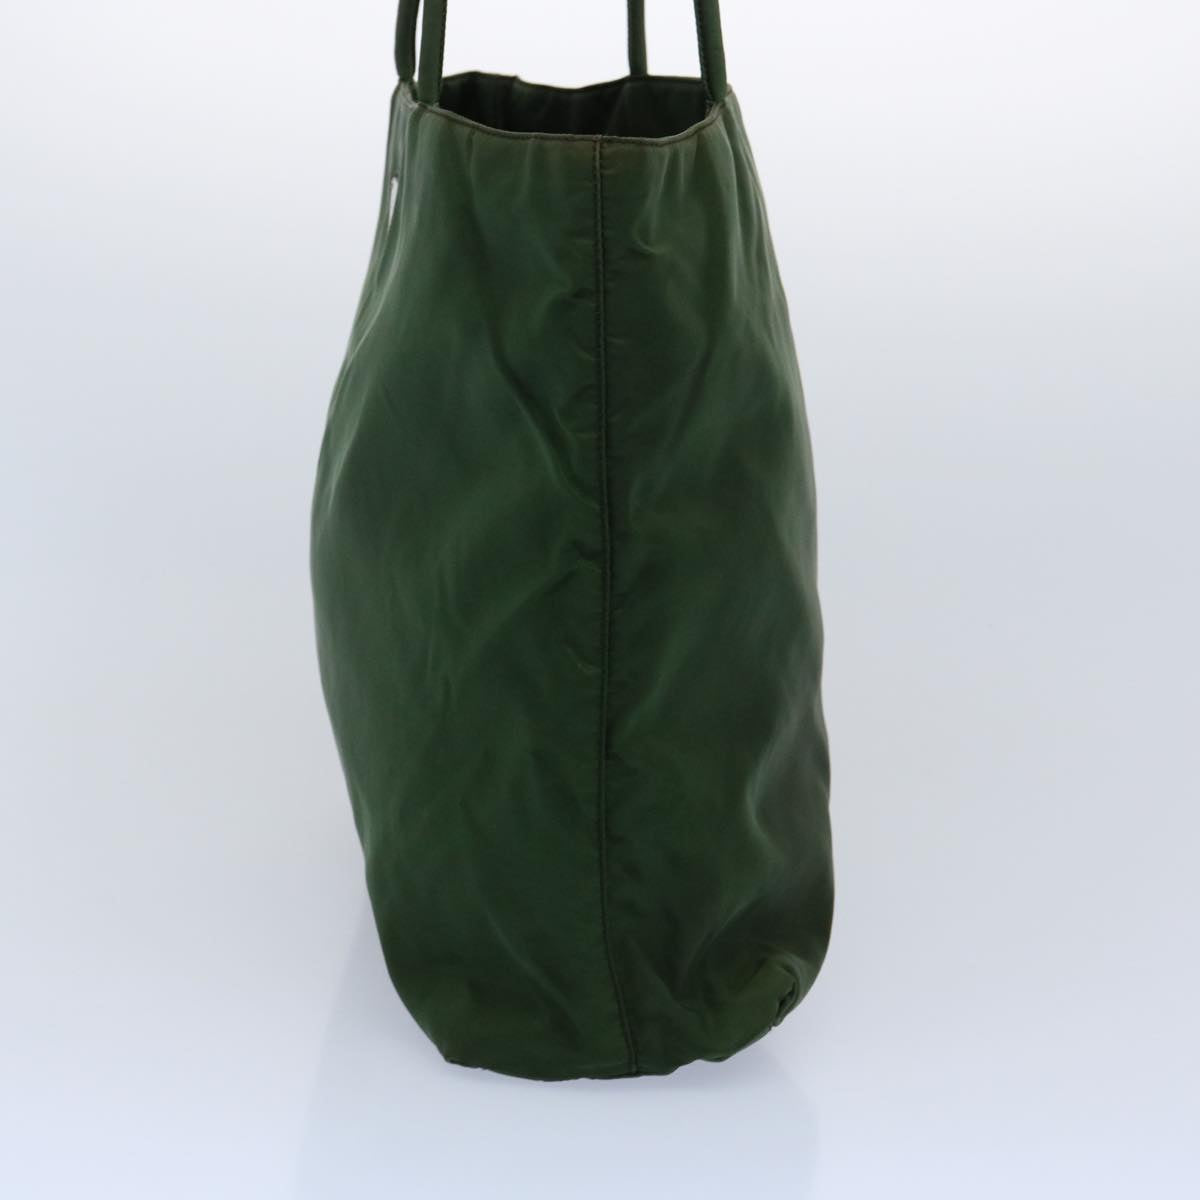 PRADA Hand Bag Nylon Khaki Auth 61098